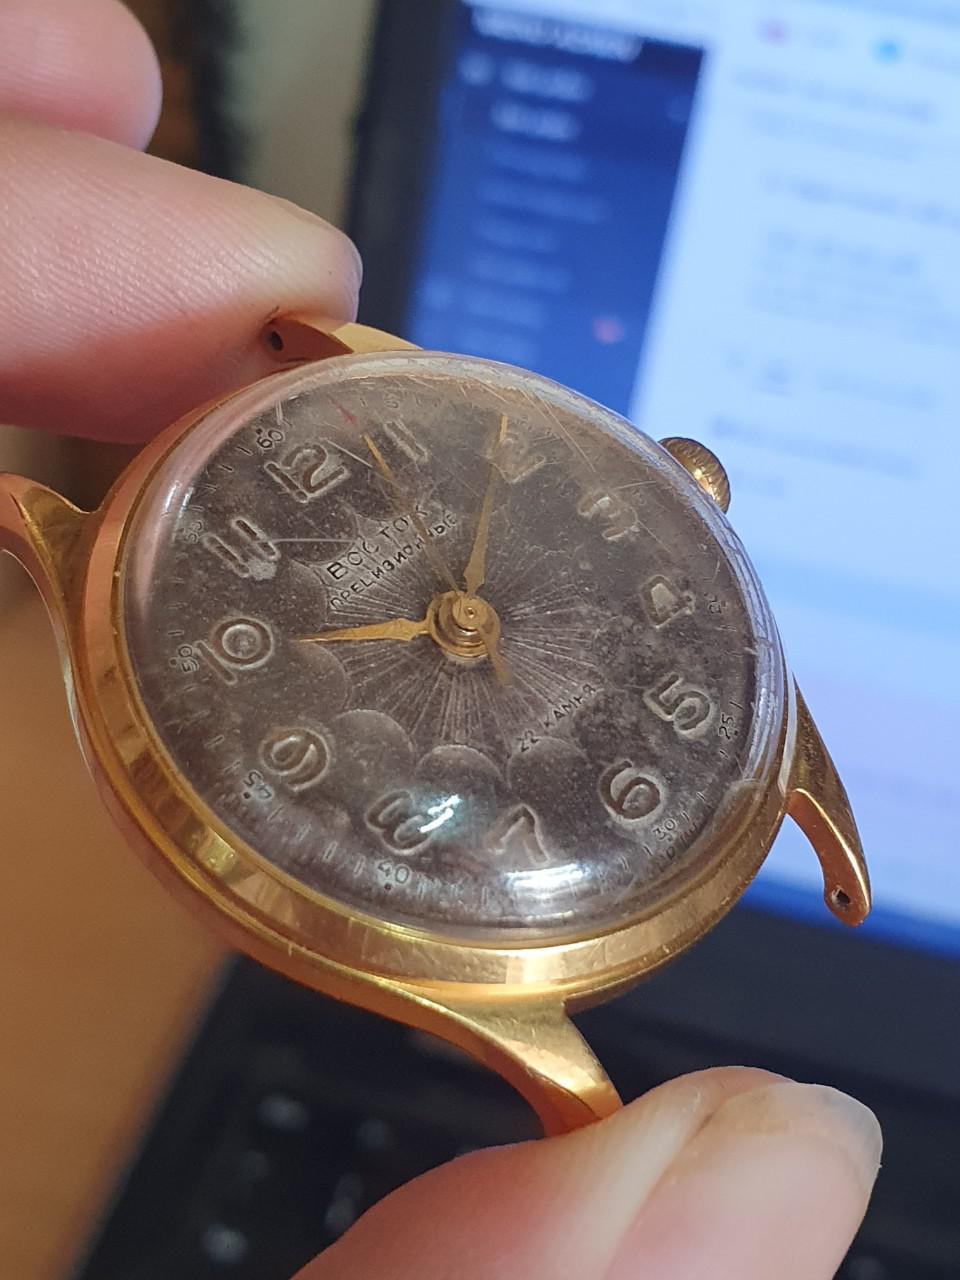 Đồng hồ Vostok 2809 22 jewels máy vàng siêu chính xác